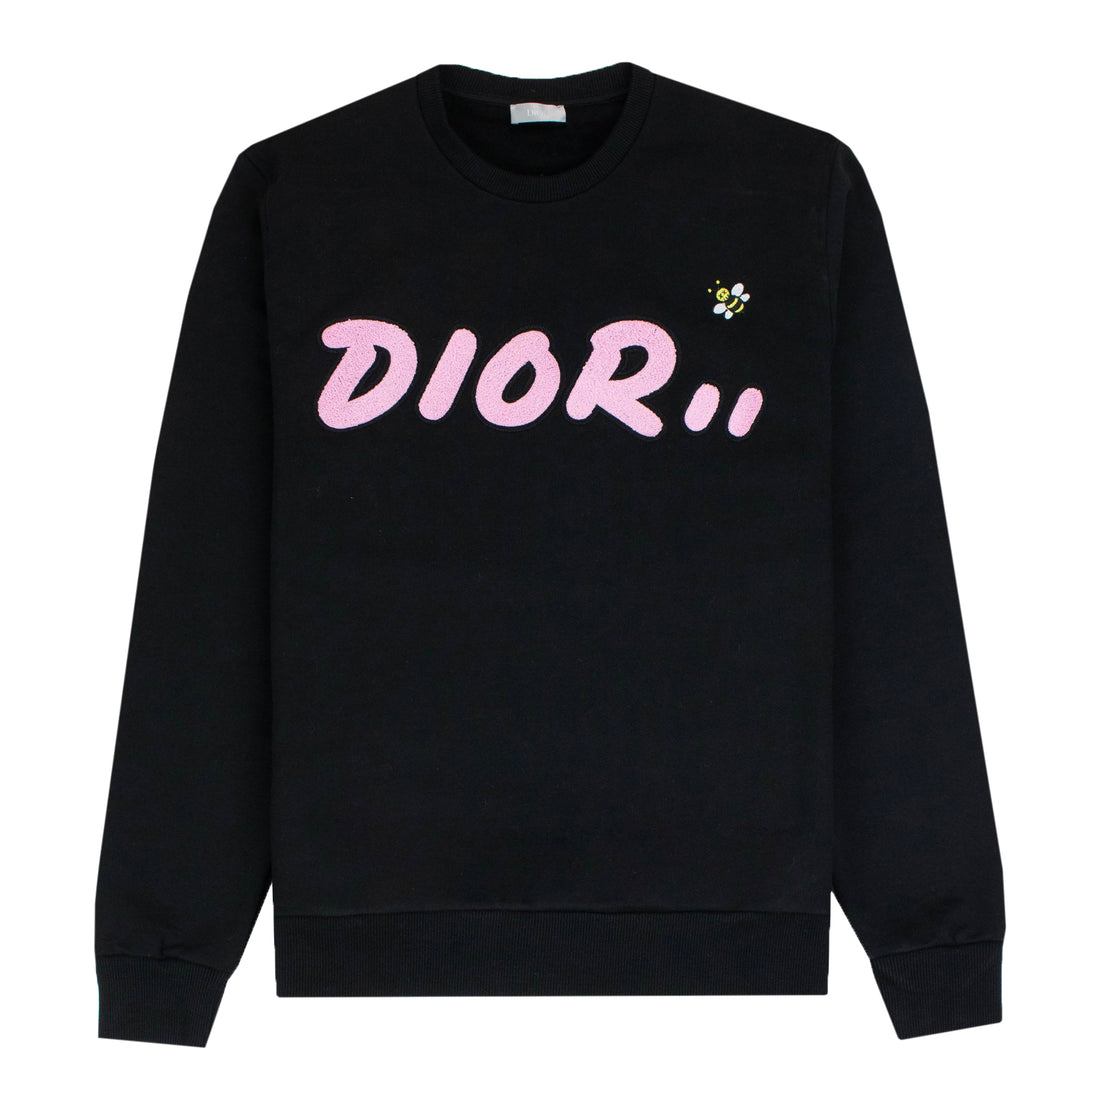 Dior x Kaws Sweatshirt